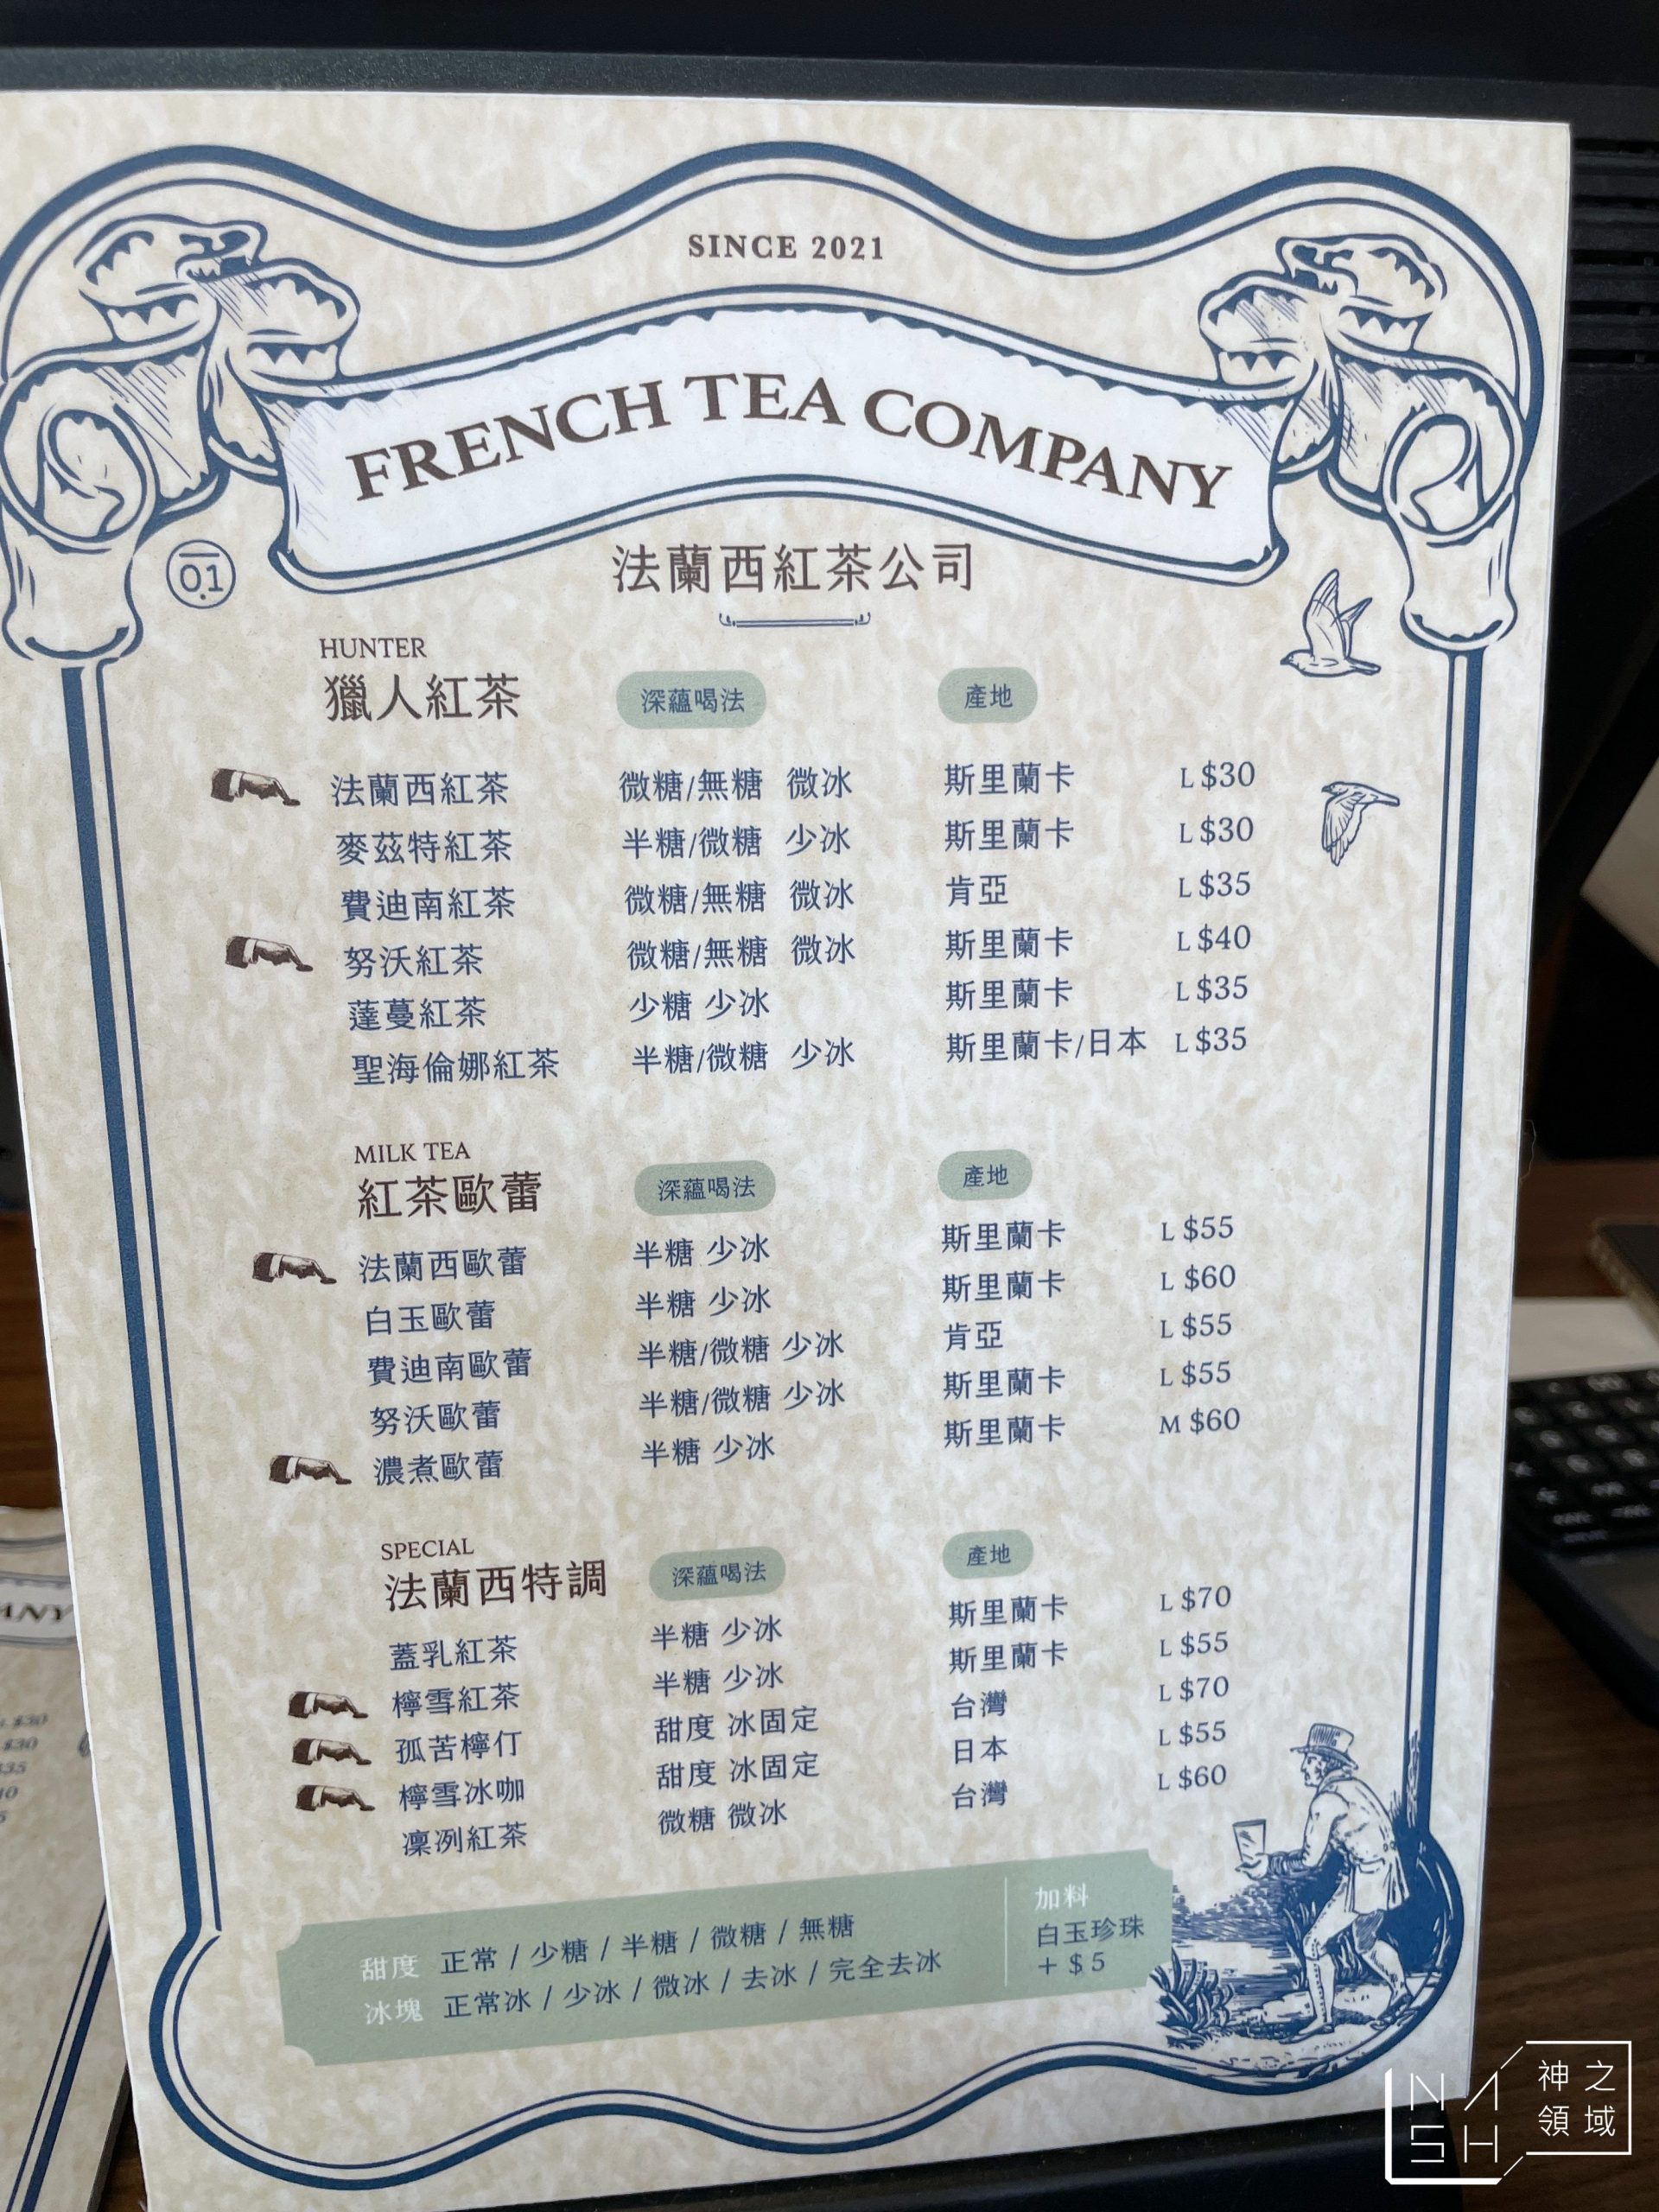 法蘭西紅茶公司